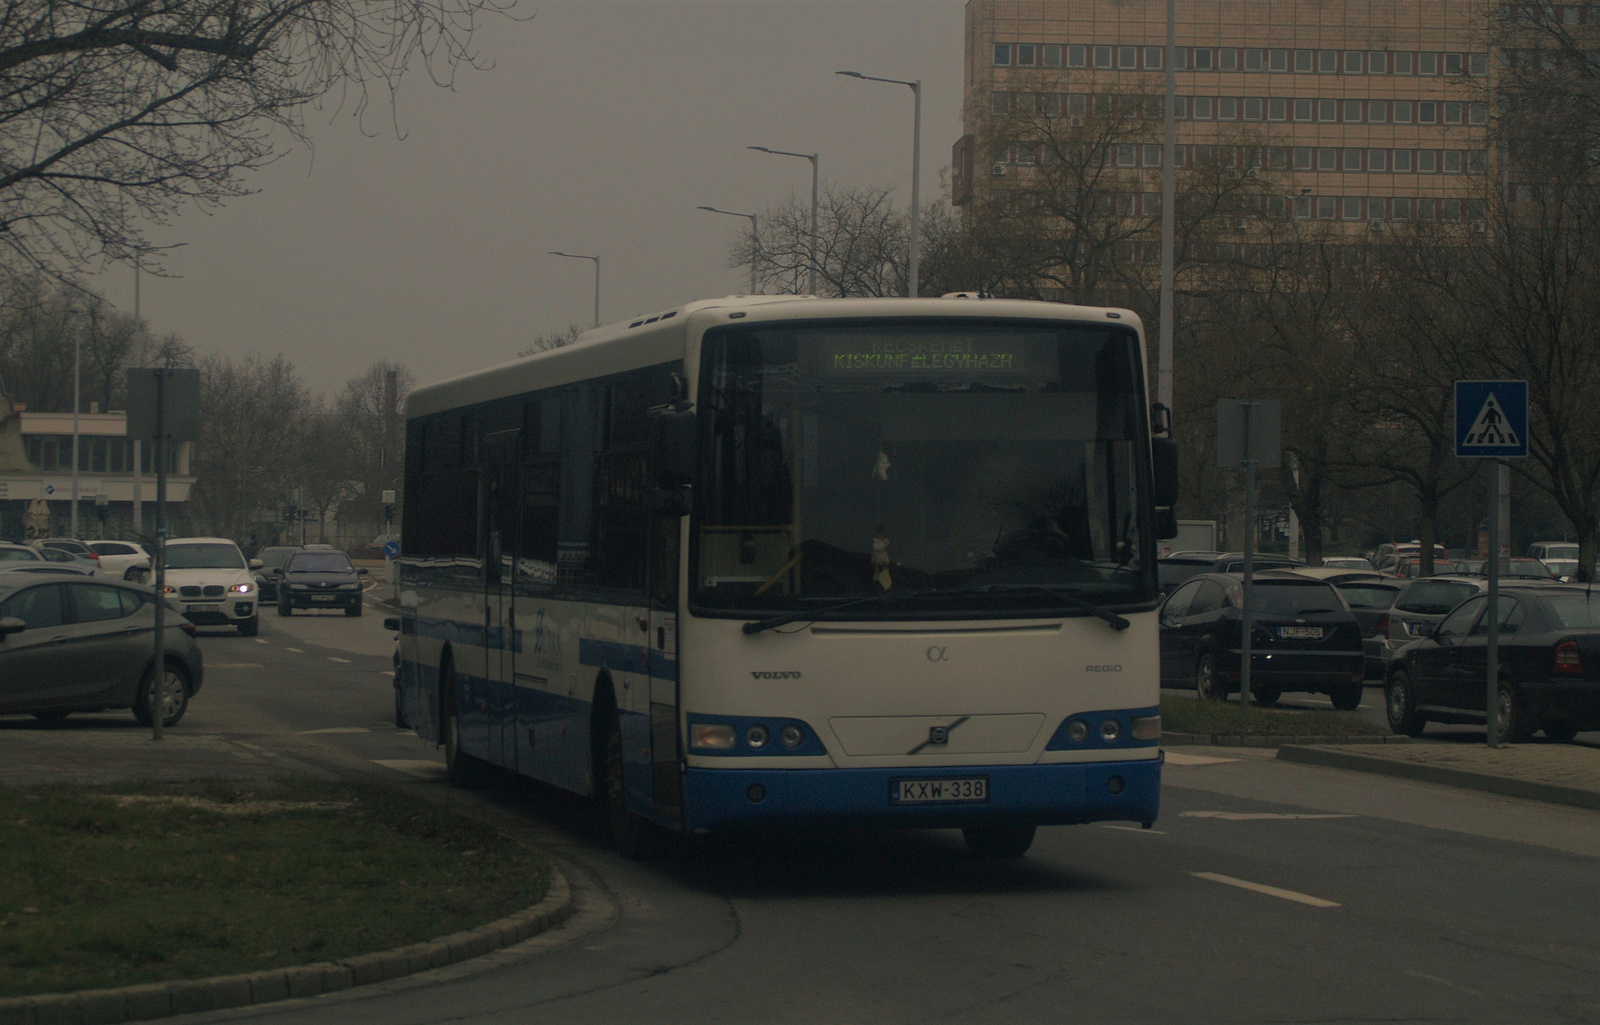 KXW-338 - Alfabusz Regio